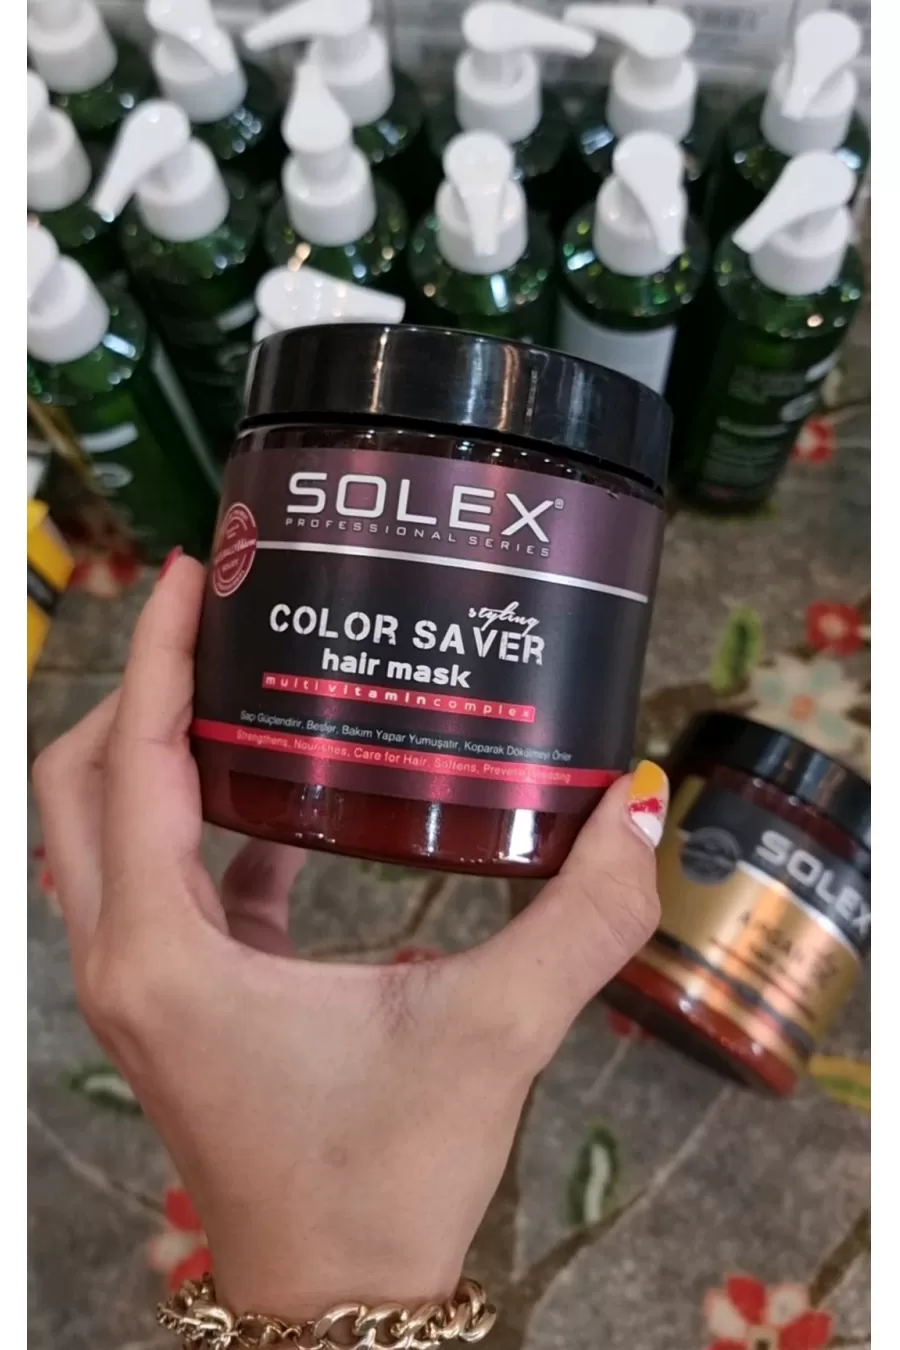 مخصوص موهای رنگ شده محافظت از موهای رنگ شده نرم کننده و آبرسانی مو تغذیه کننده و از بین برنده مو خوره سولکس SOLEX ماسک مو